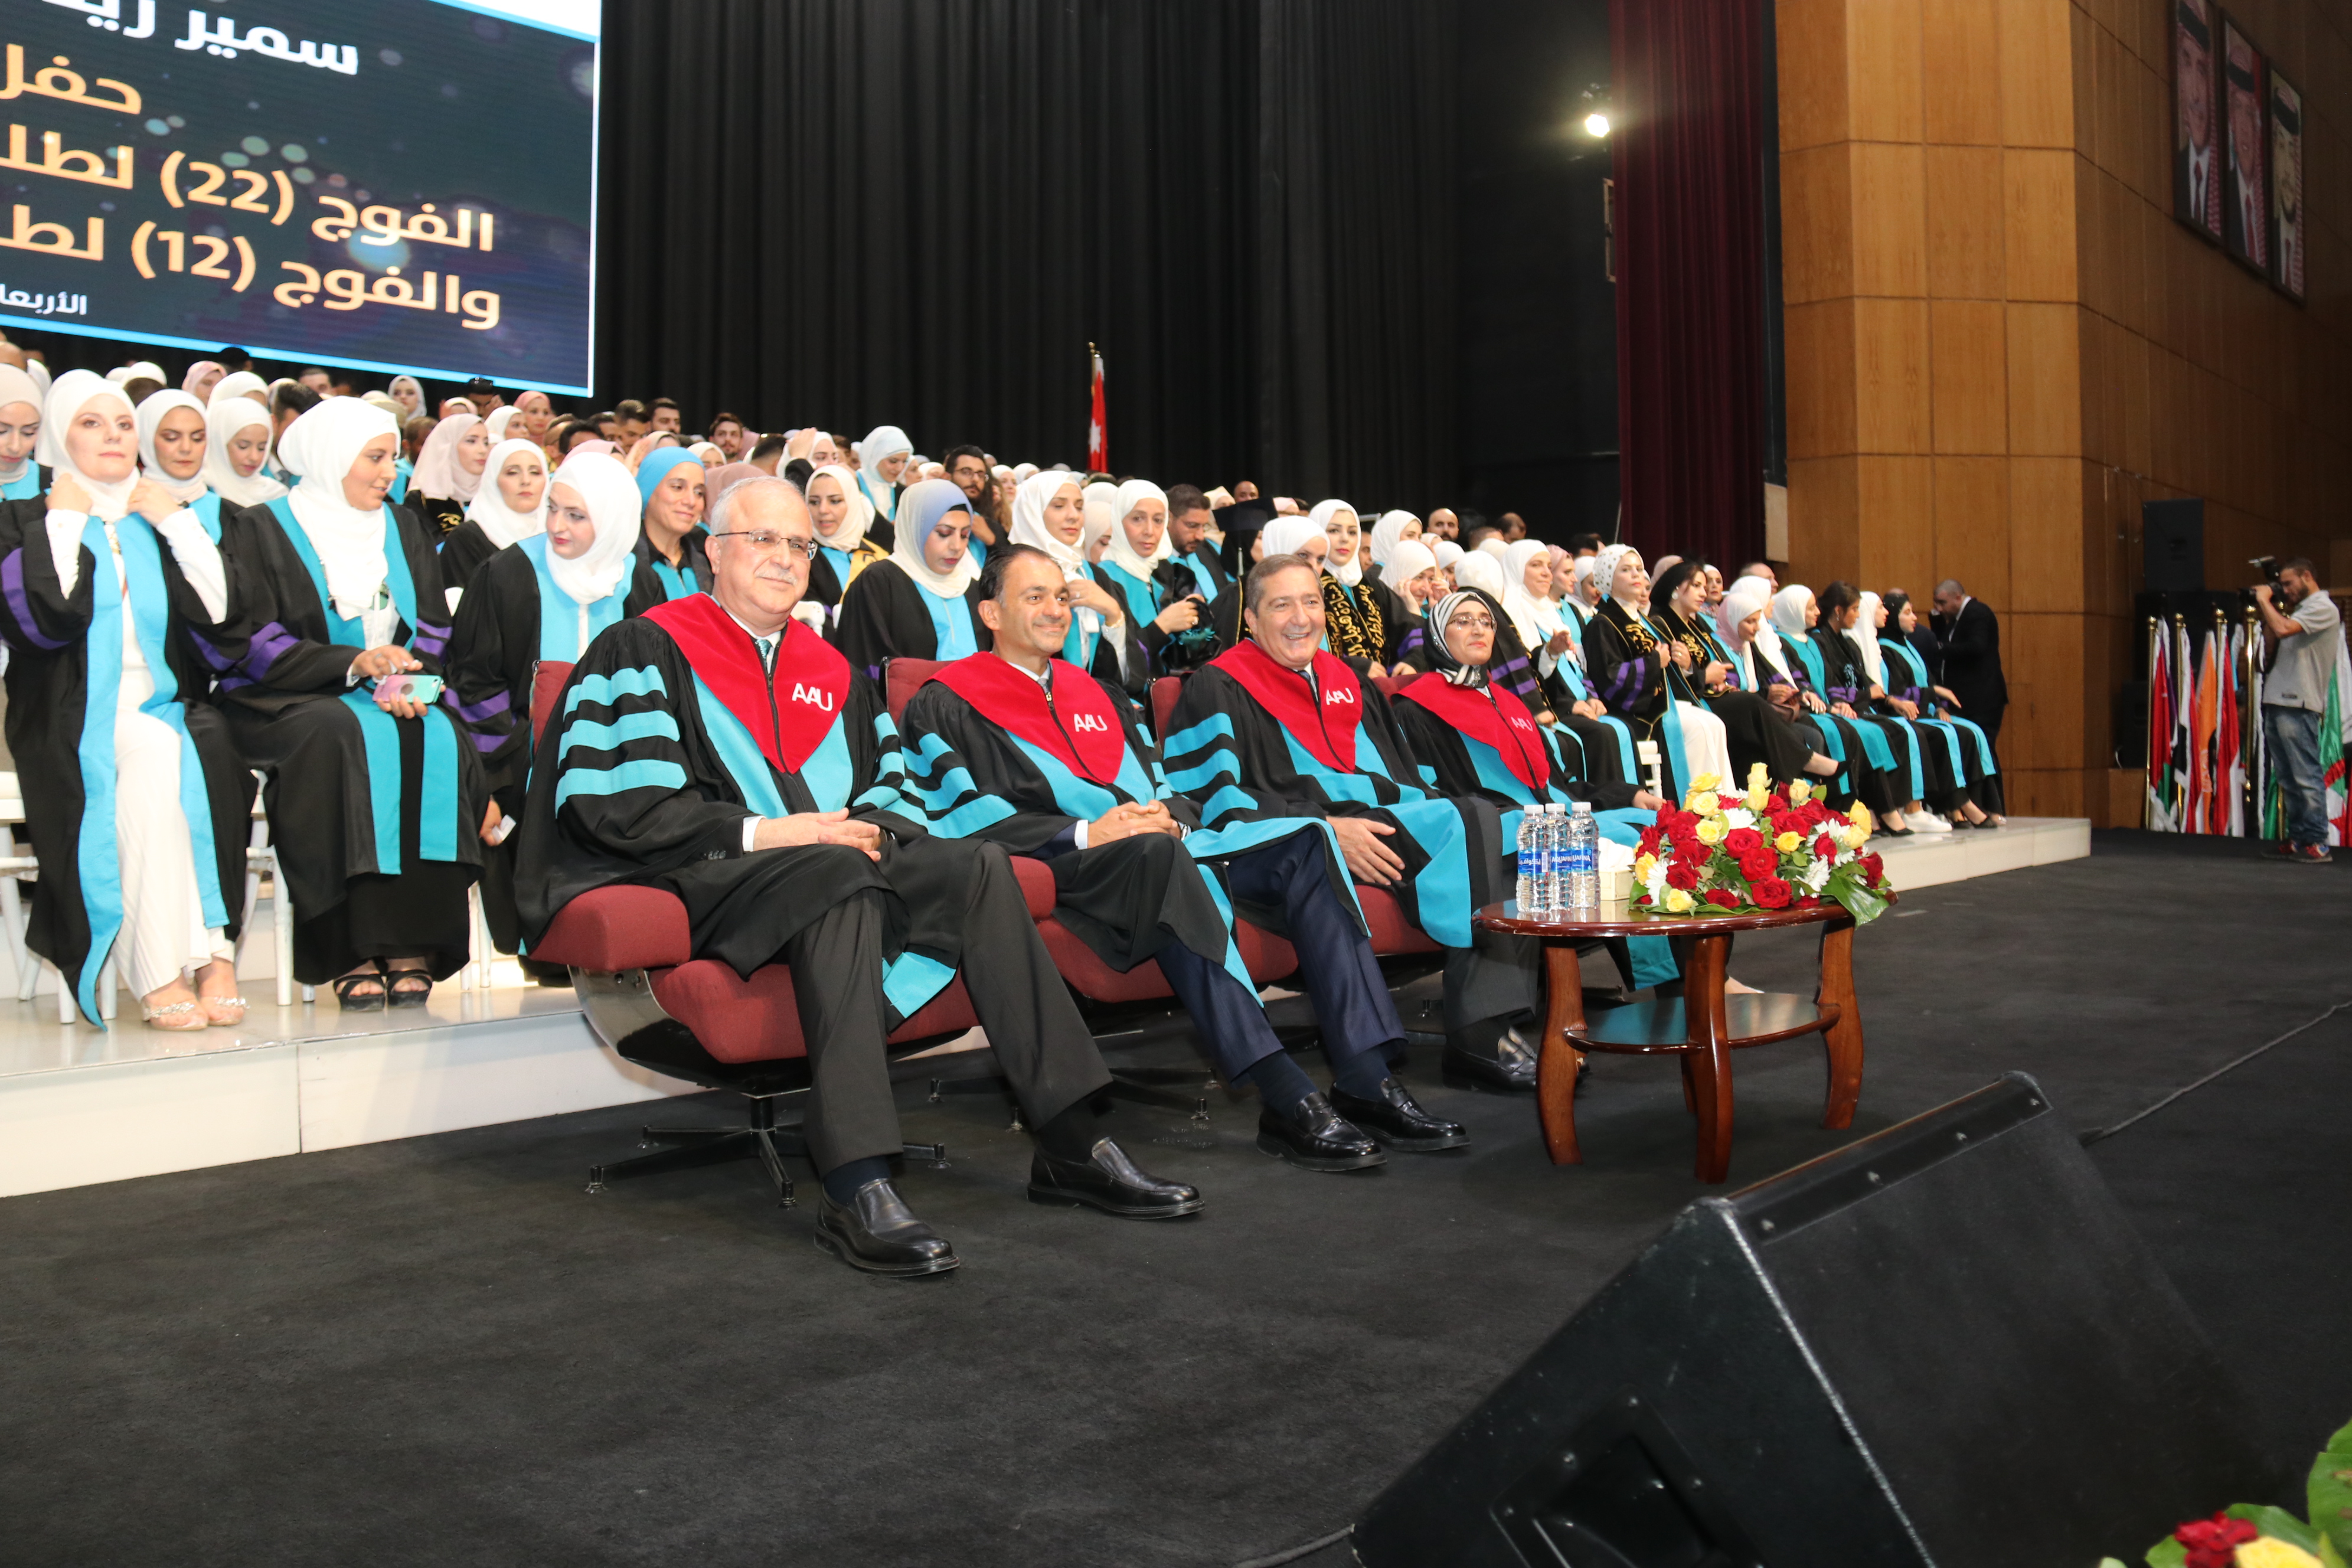 مشاهد أولية لاحتفالات جامعة عمان العربية بخريجيها للعام الدراسي 2021-202215